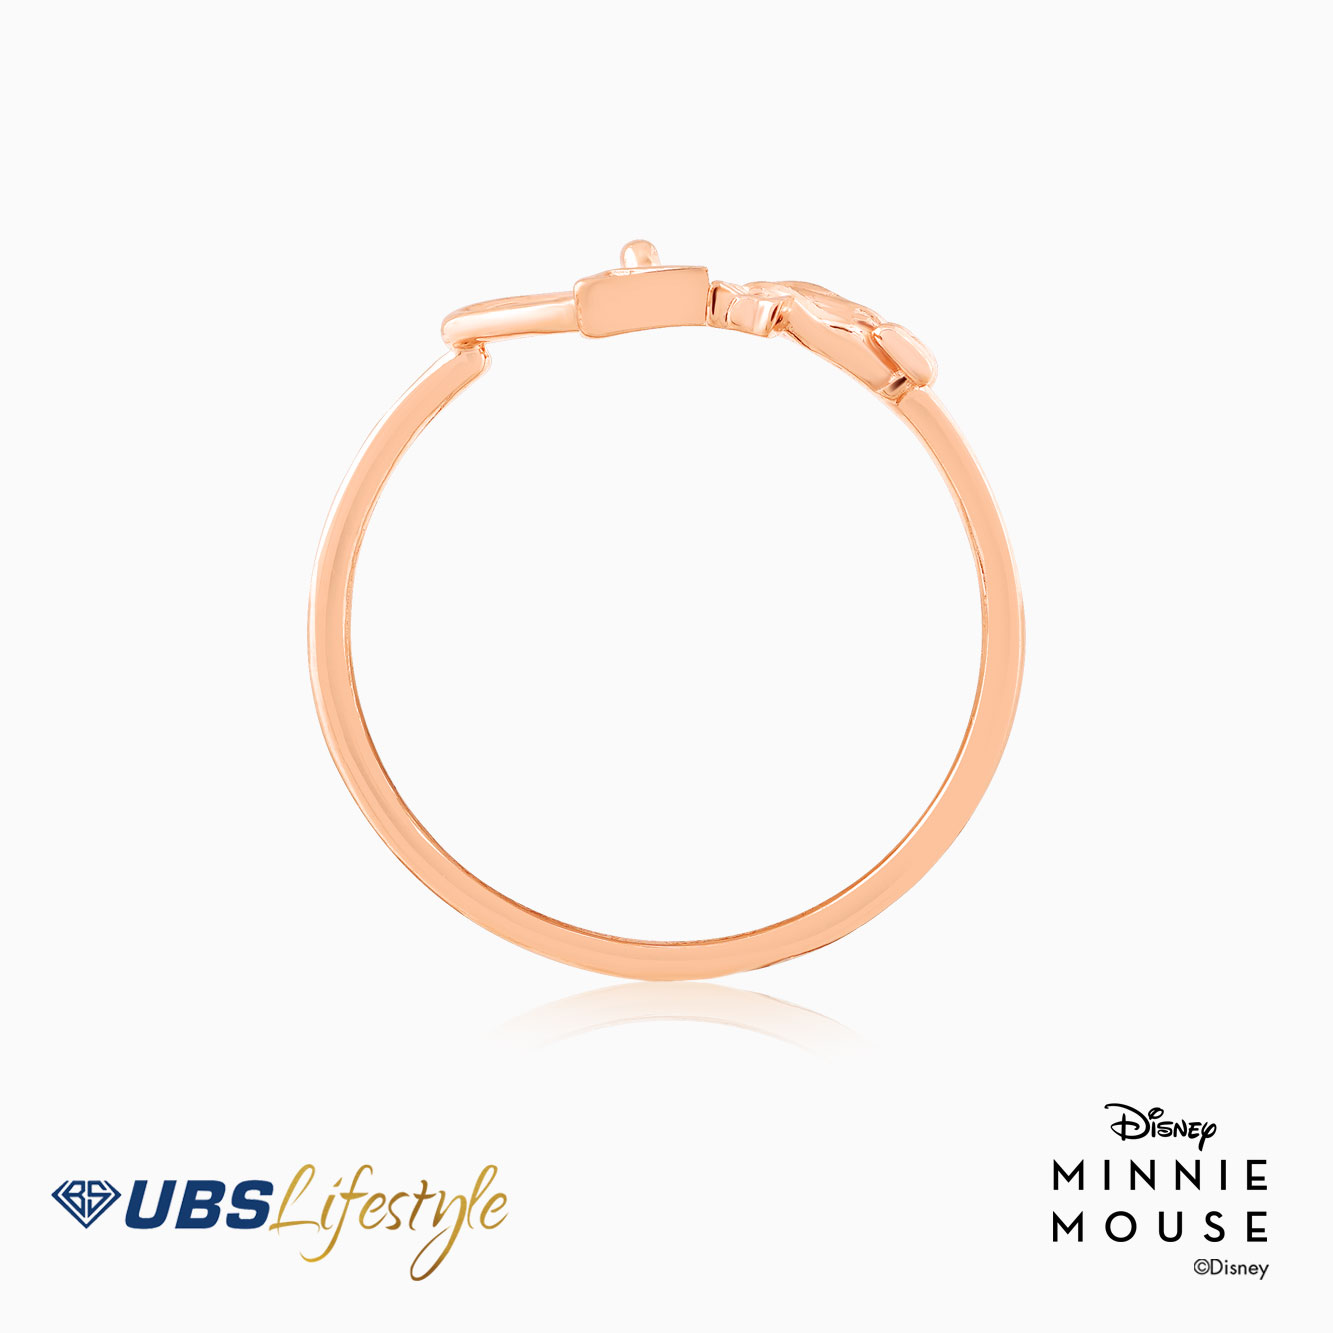 UBS Cincin Emas Disney Minnie Mouse - Ccy0174R - 17K